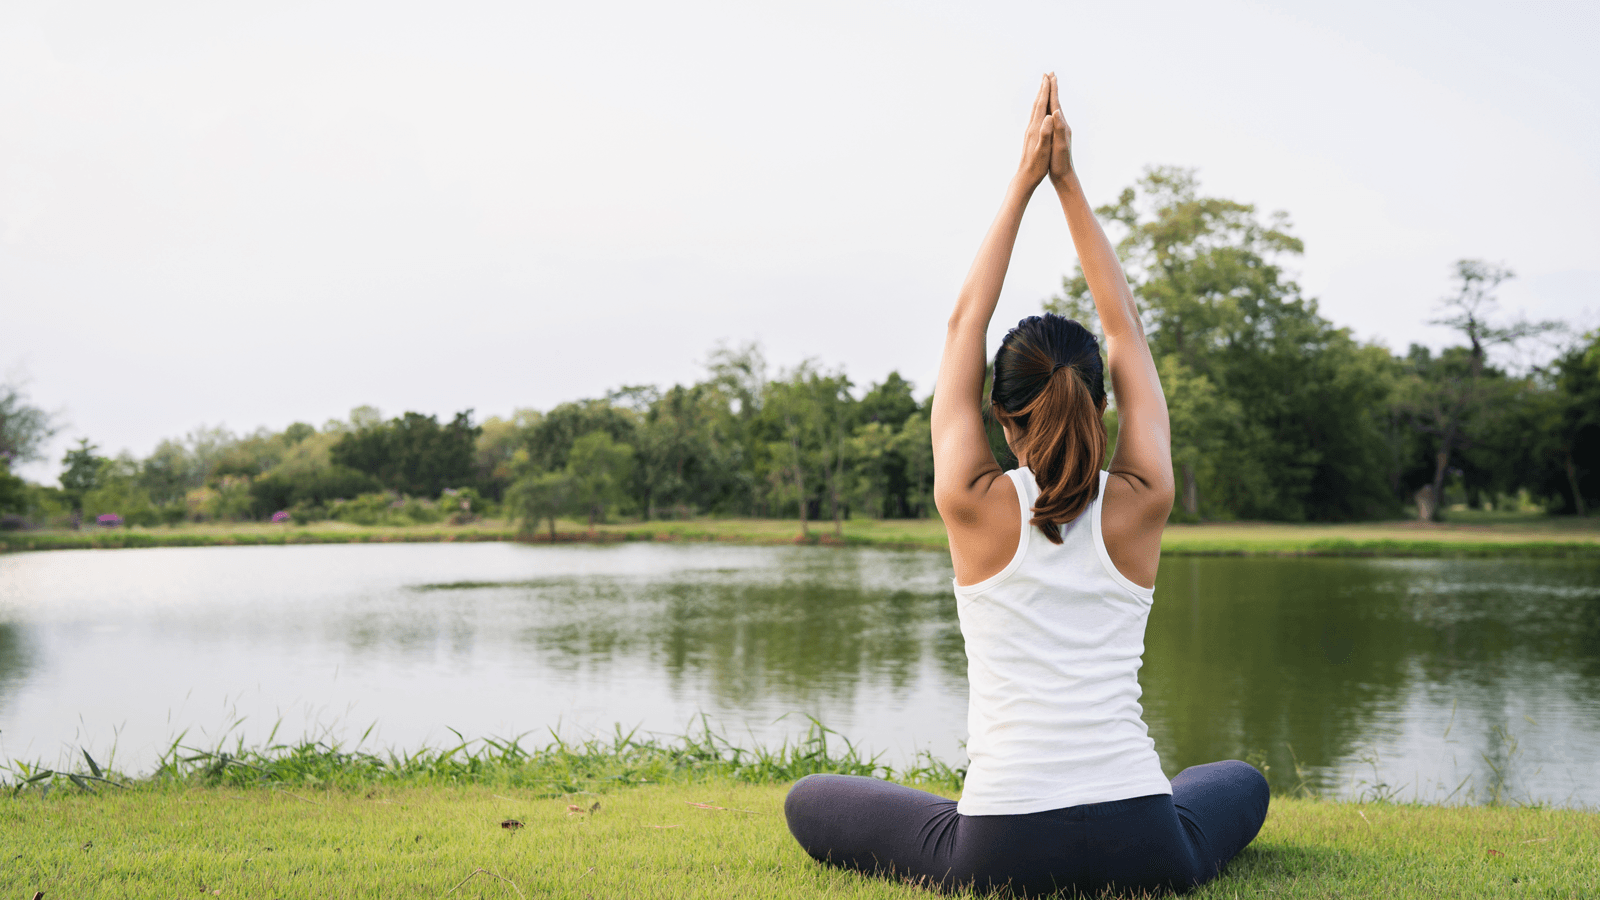 Tập yoga bao lâu thì có hiệu quả là câu hỏi “bật” ra đầu tiên của những ai nóng lòng muốn tìm đến yoga để giảm cân, tăng sự dẻo dai, chữa bệnh... Thật khó để xác định hiệu quả trong thời gian ngắn nhưng yoga chắc chắn sẽ không làm bạn thất vọng khi theo đuổi đến cùng.